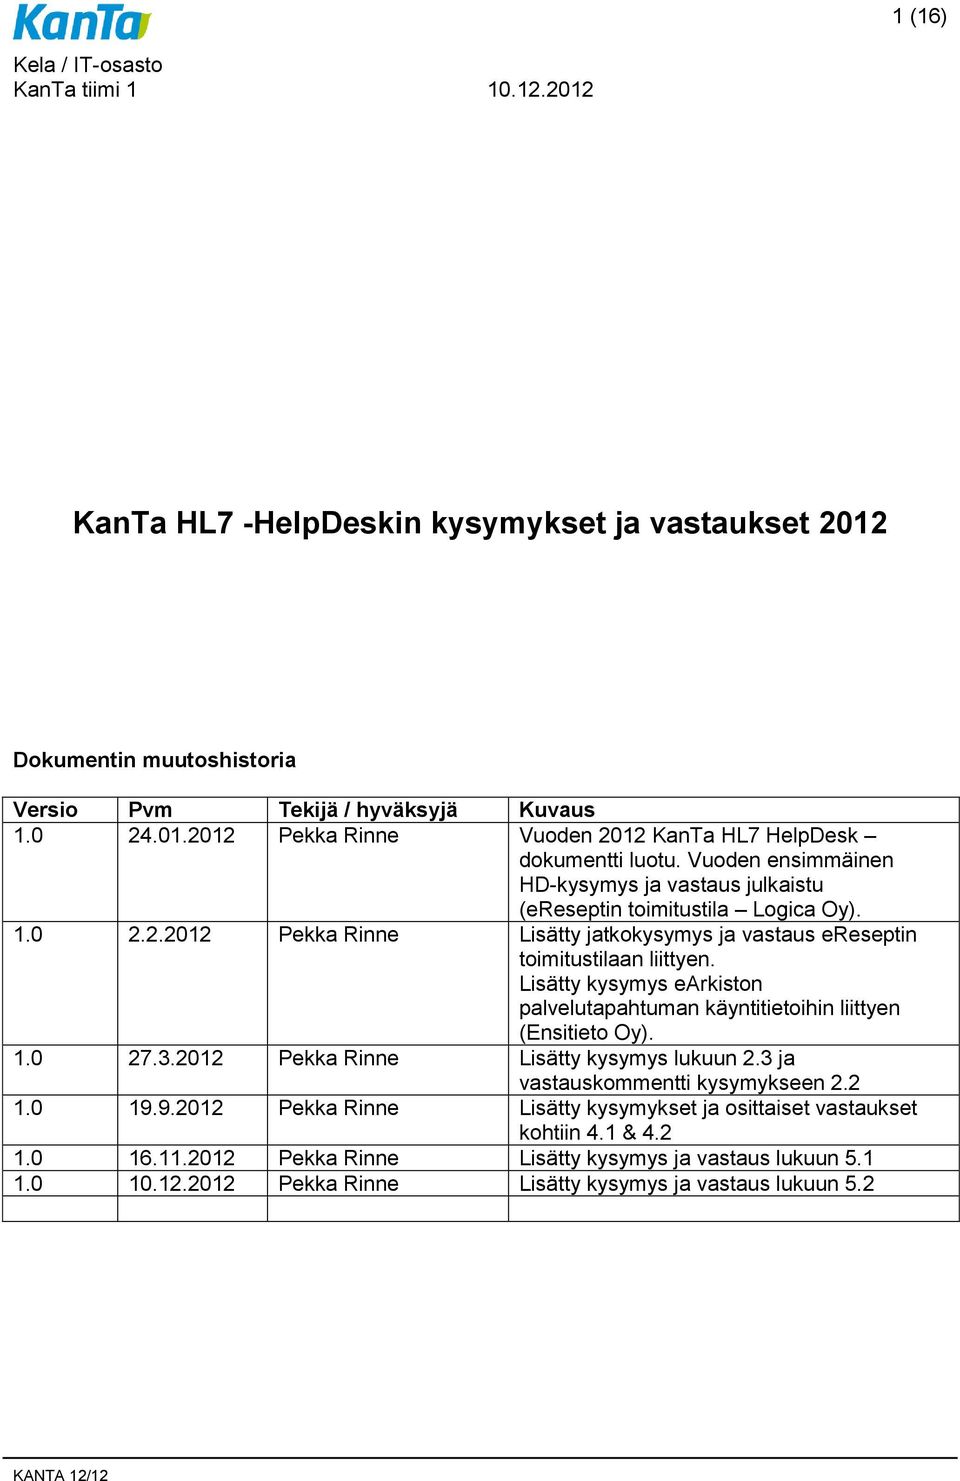 Lisätty kysymys earkiston palvelutapahtuman käyntitietoihin liittyen (Ensitieto Oy). 1.0 27.3.2012 Pekka Rinne Lisätty kysymys lukuun 2.3 ja vastauskommentti kysymykseen 2.2 1.0 19.